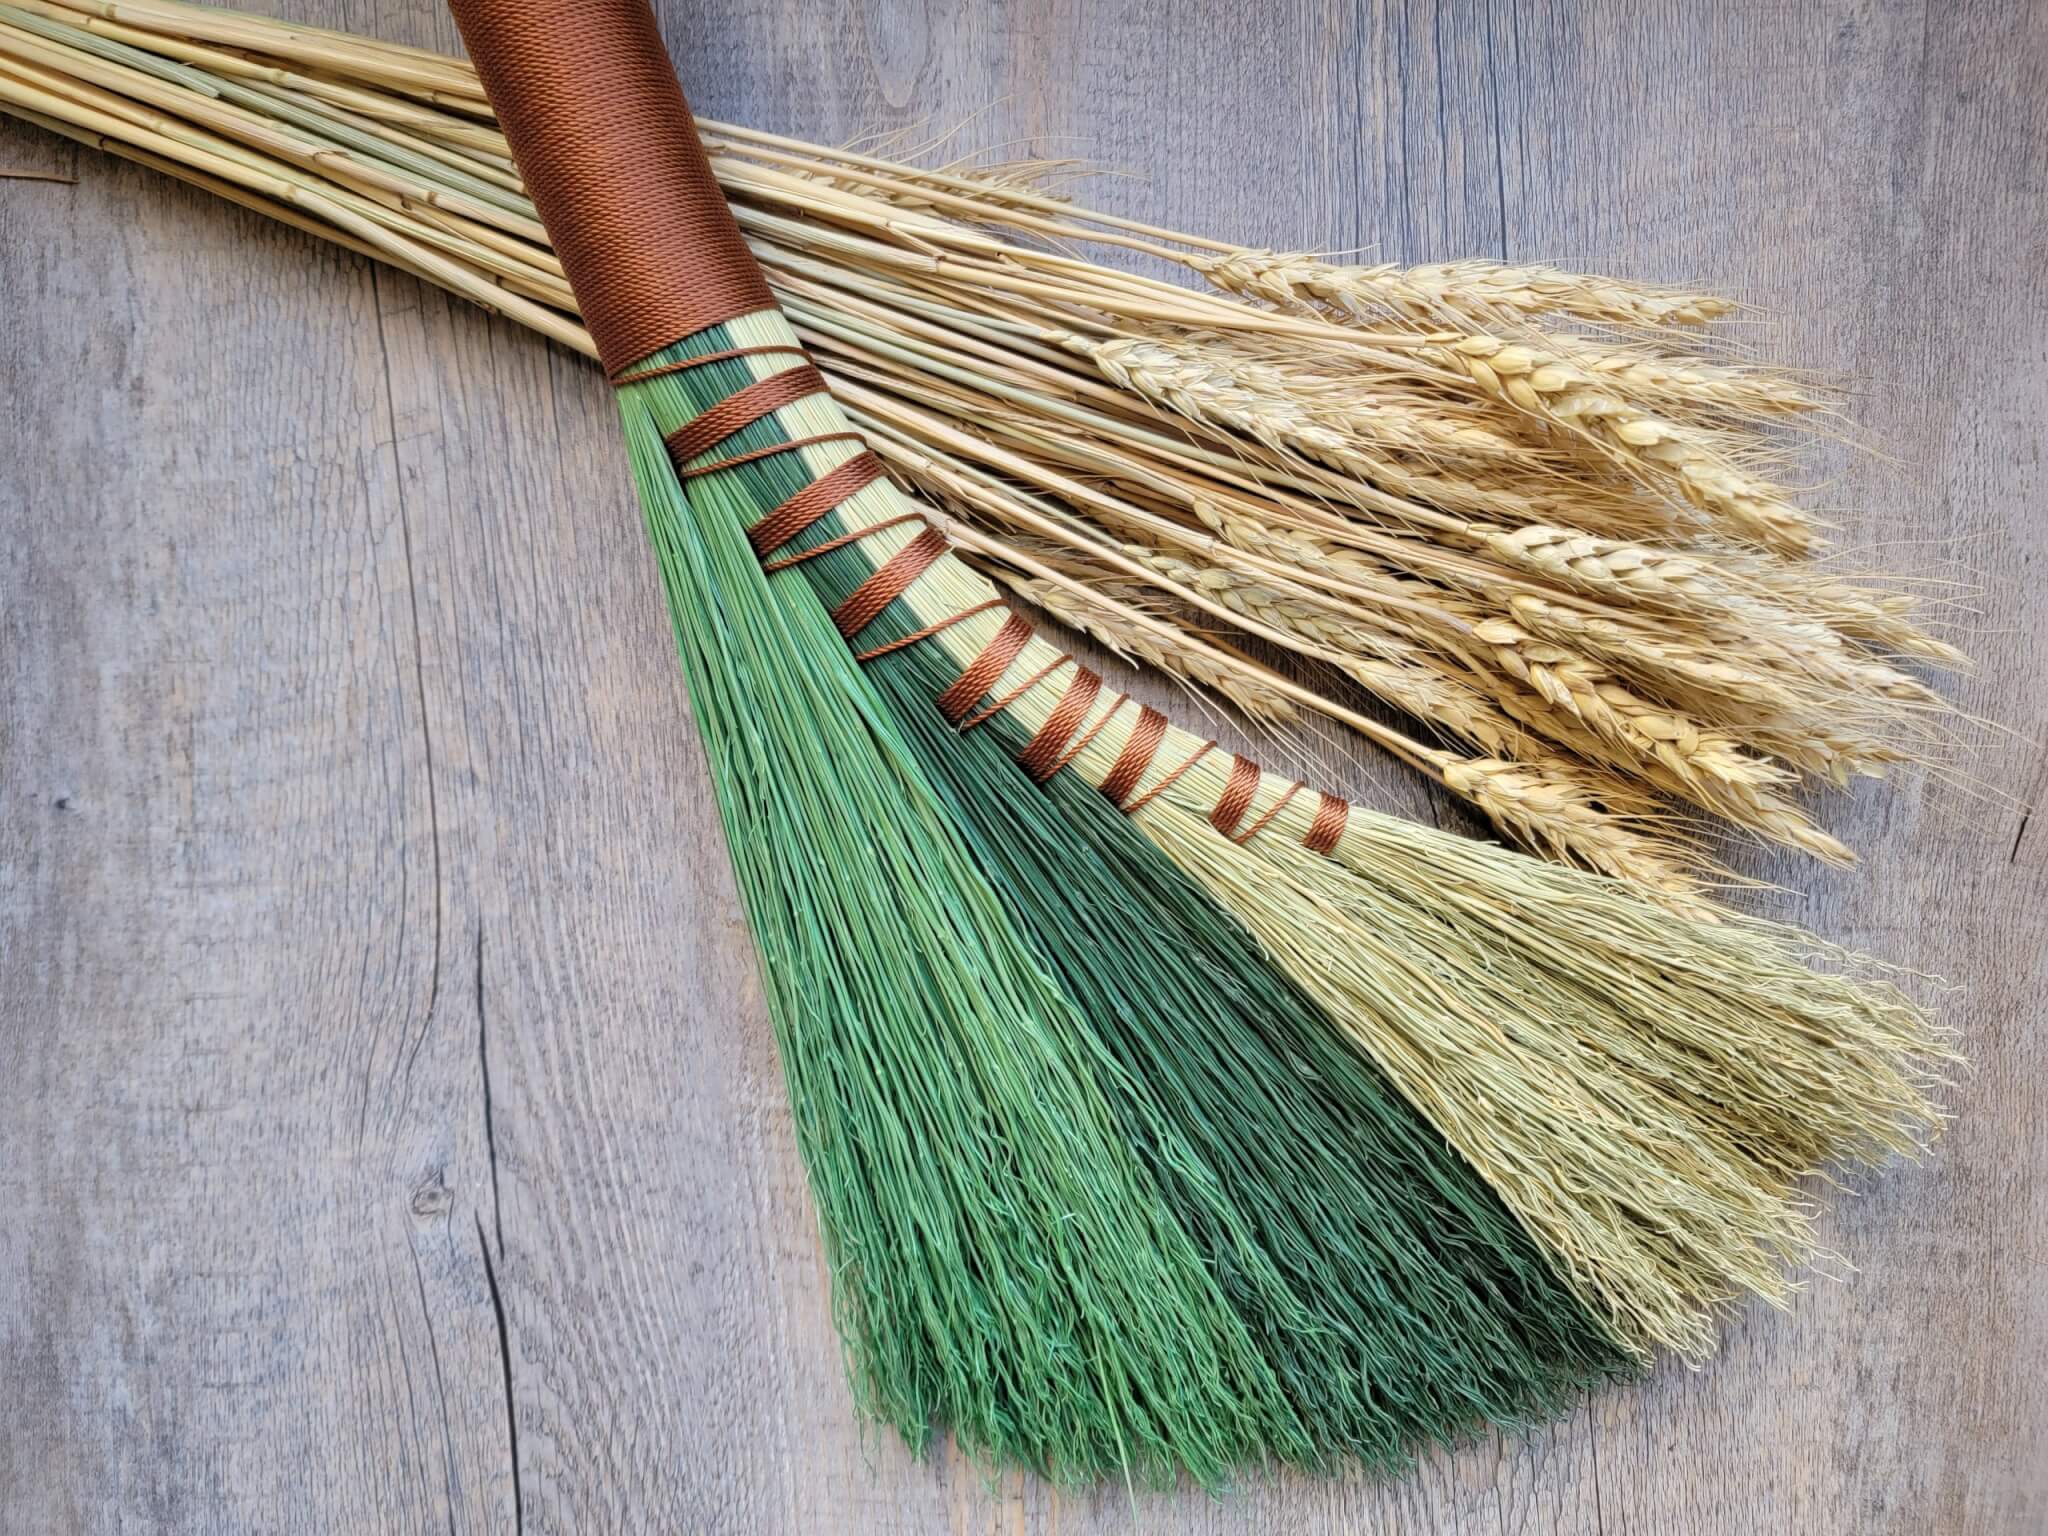 africa sweeping broom